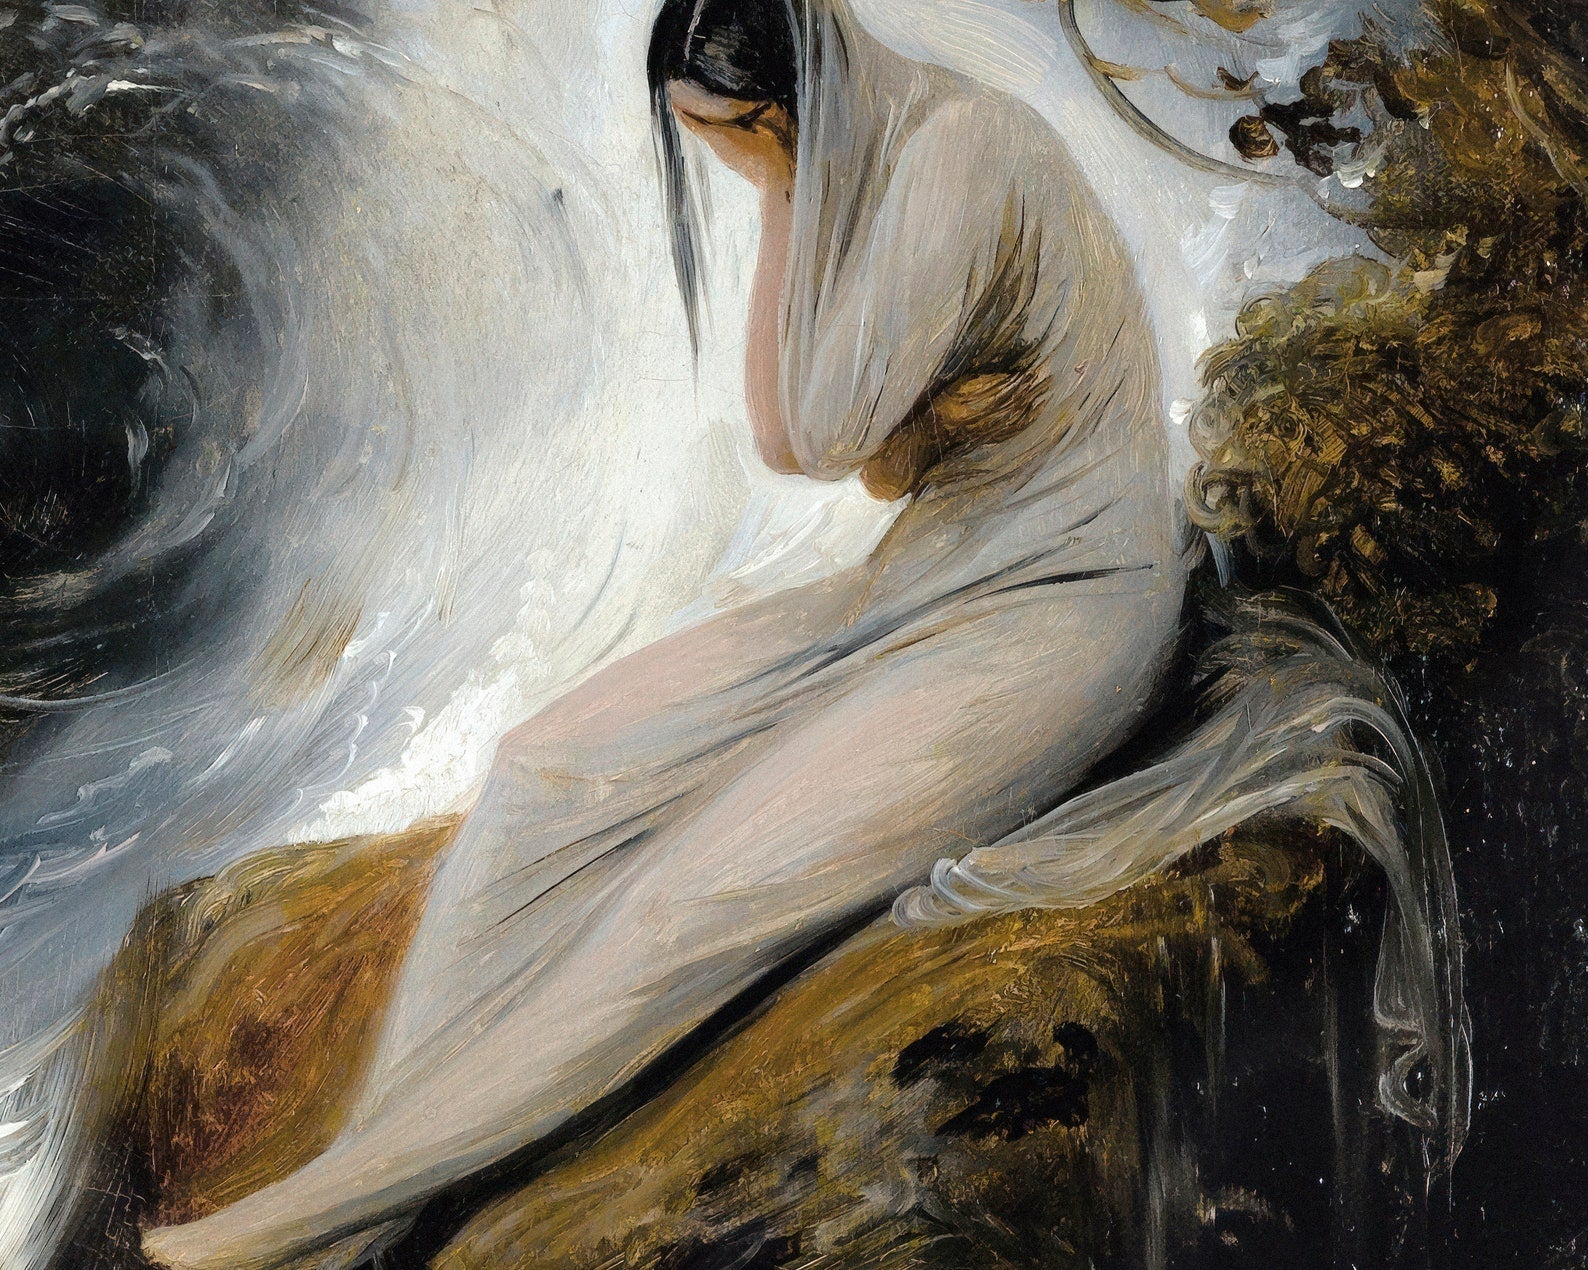 Émile Jean - Horace Vernet "The Maiden's Lament" (c.1830) - Mabon Gallery